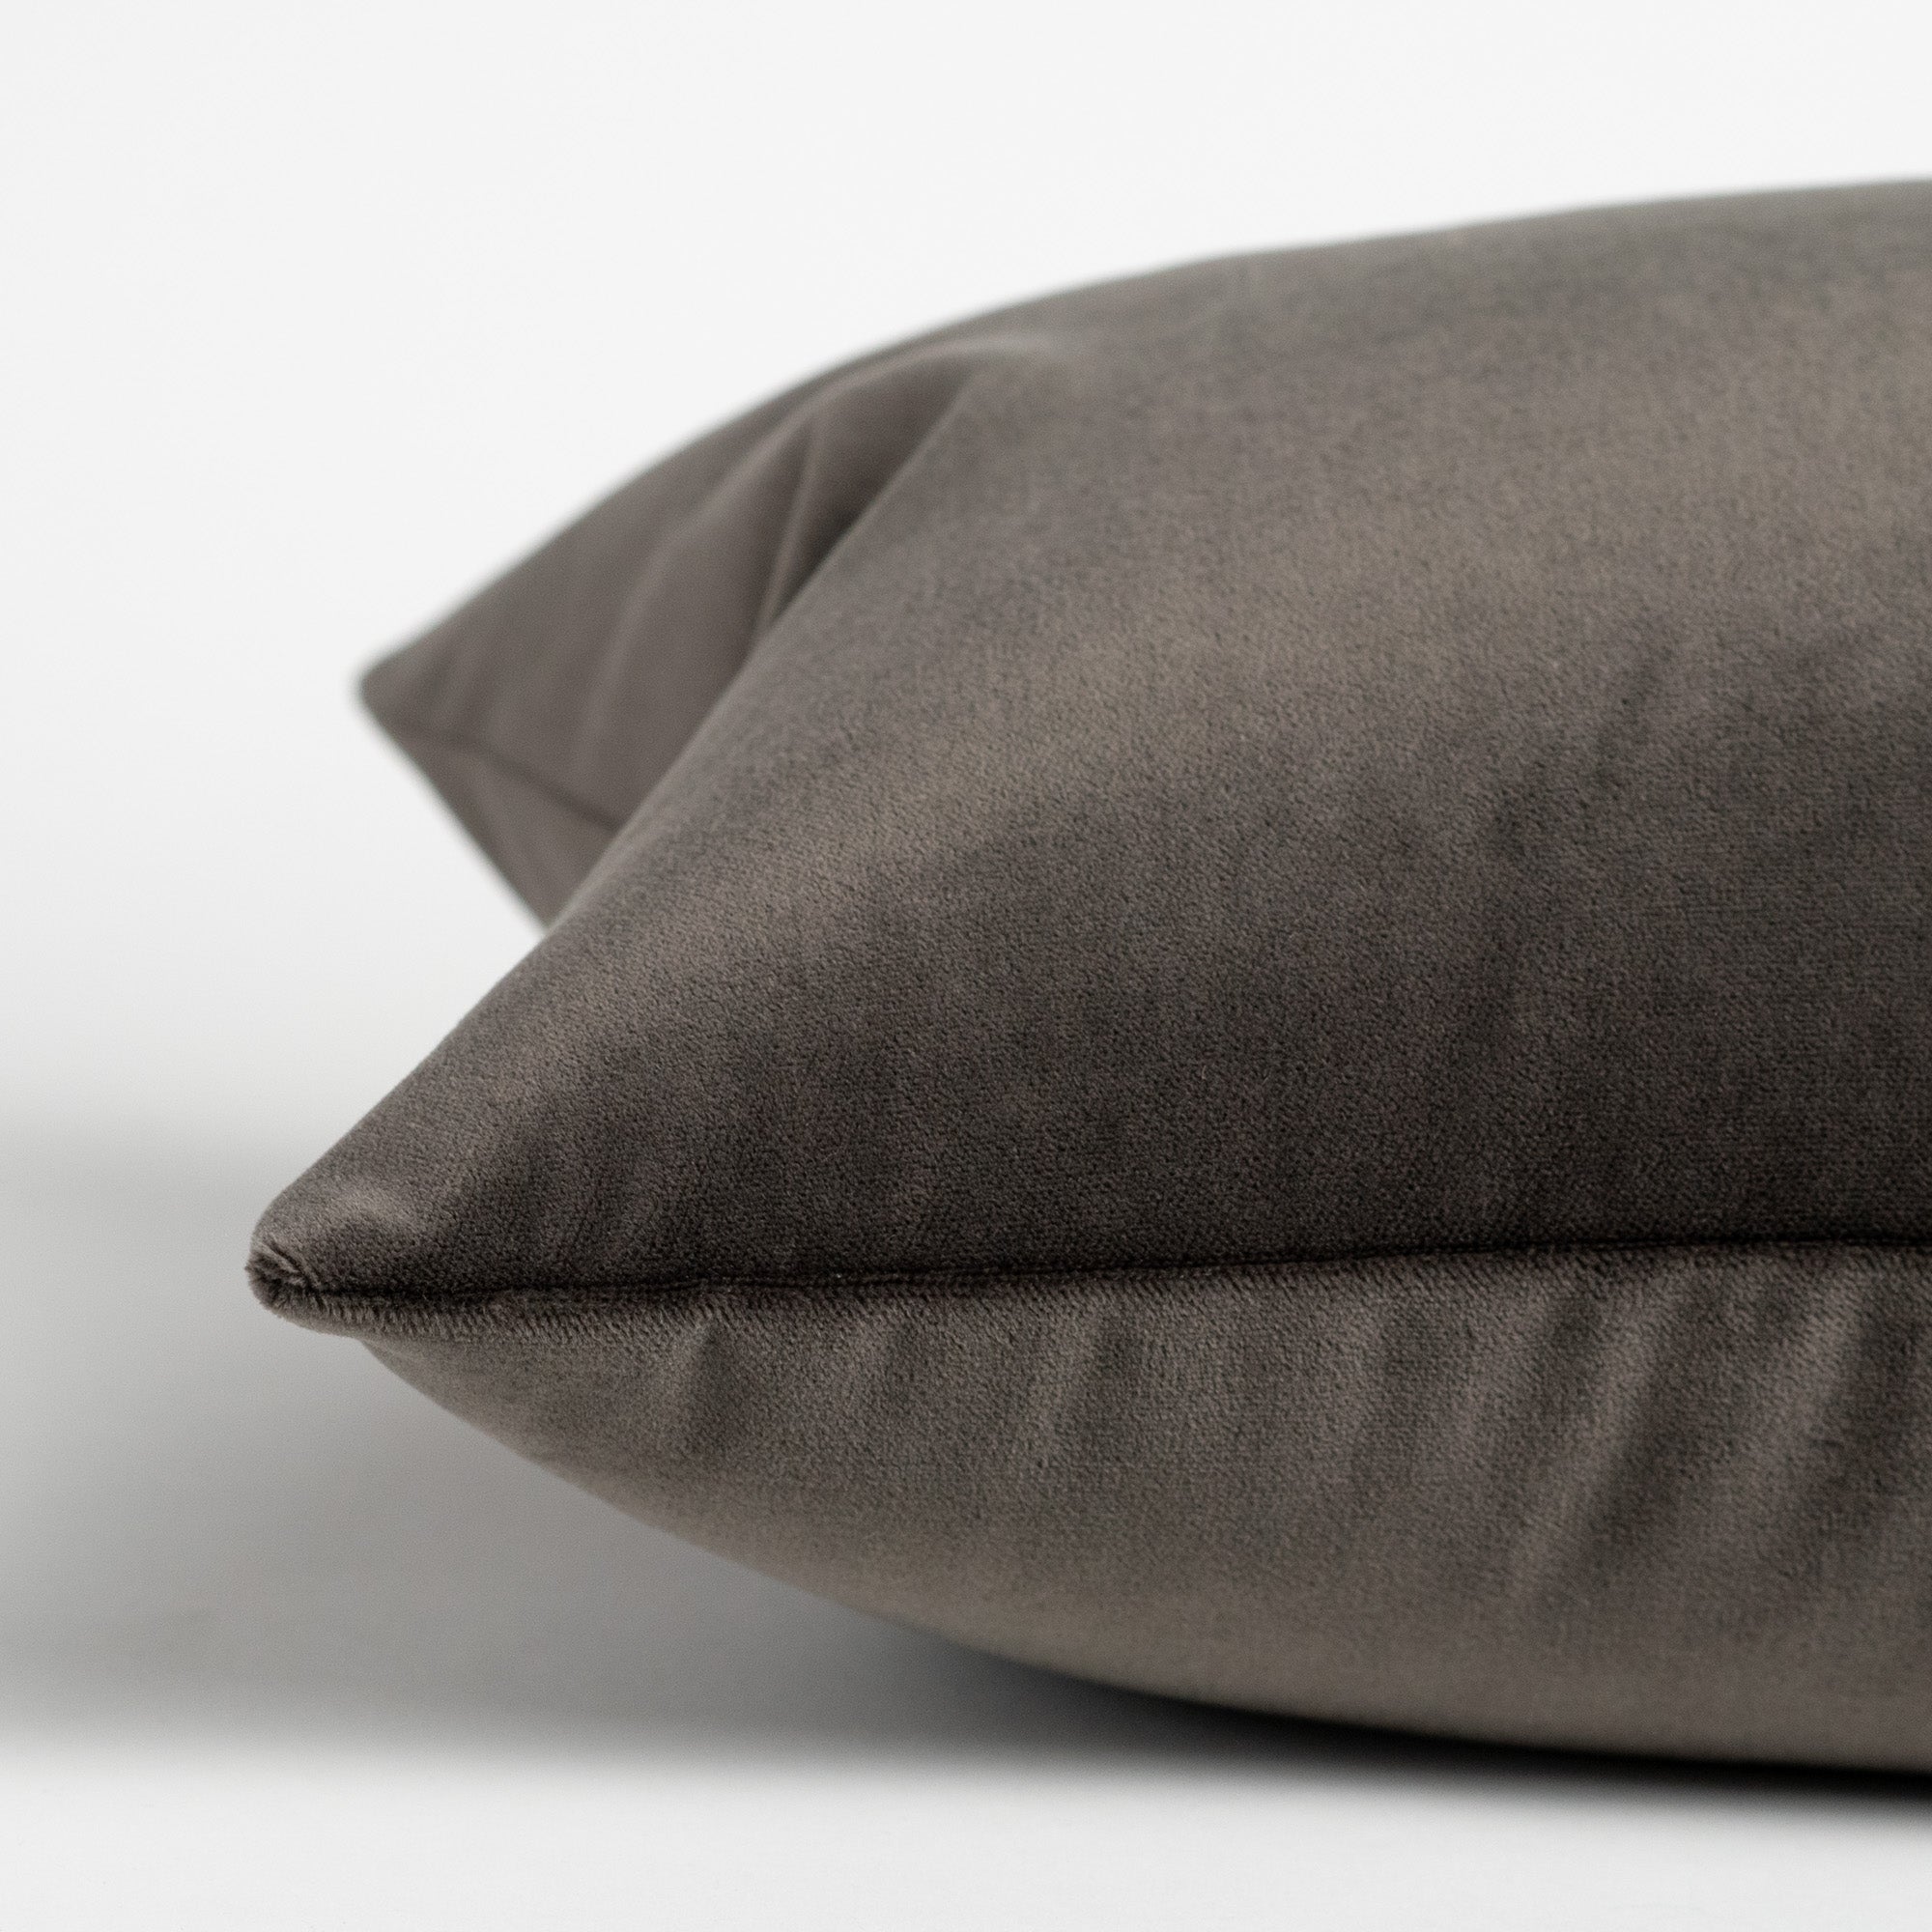 Safi Oversized Lumbar Pillow, Extra Long Lumbar Pillow for Bed